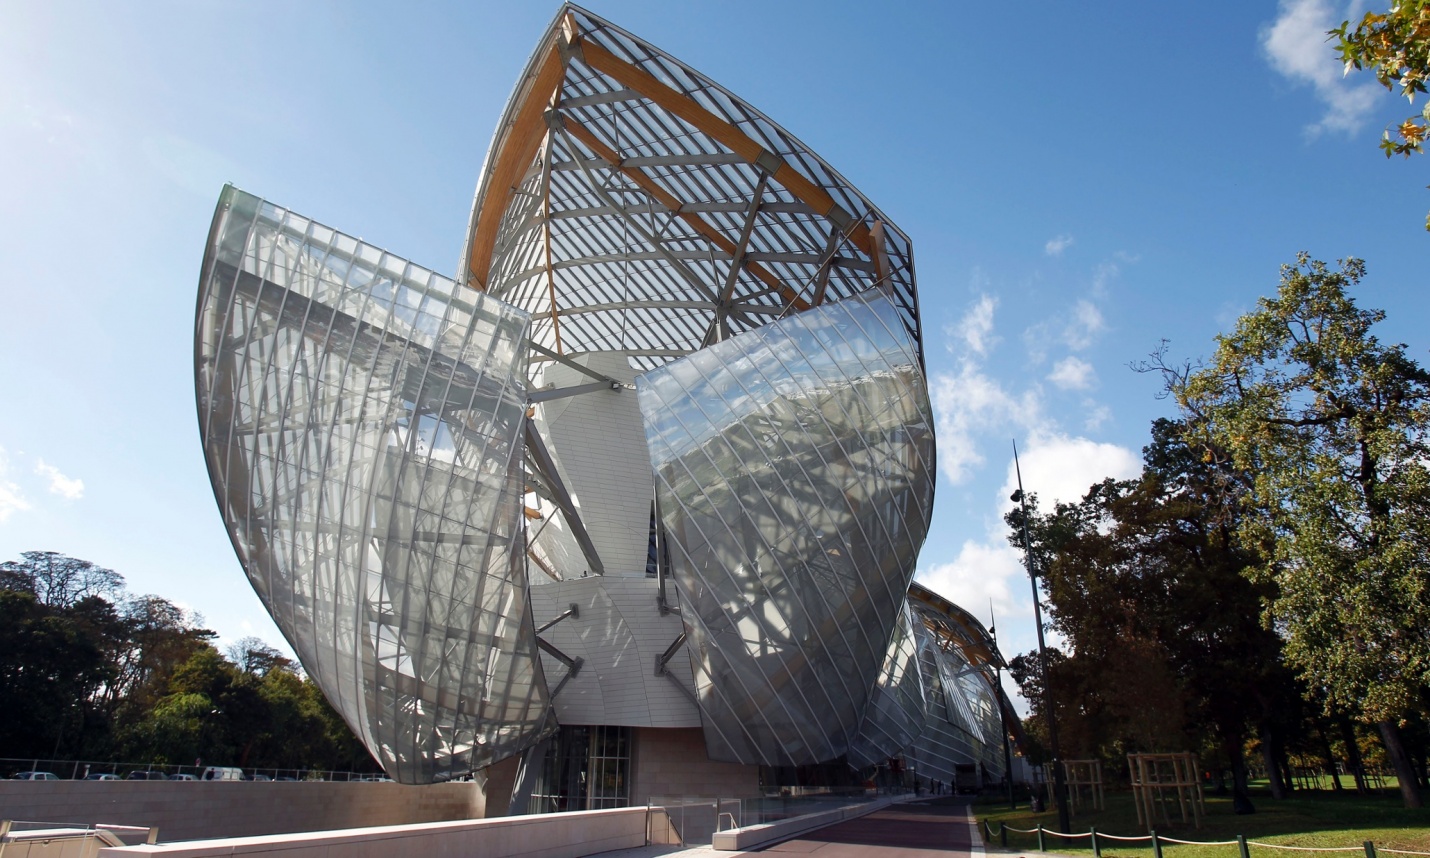 Fondation Louis Vuitton art museum opens in Paris | ASEF culture360